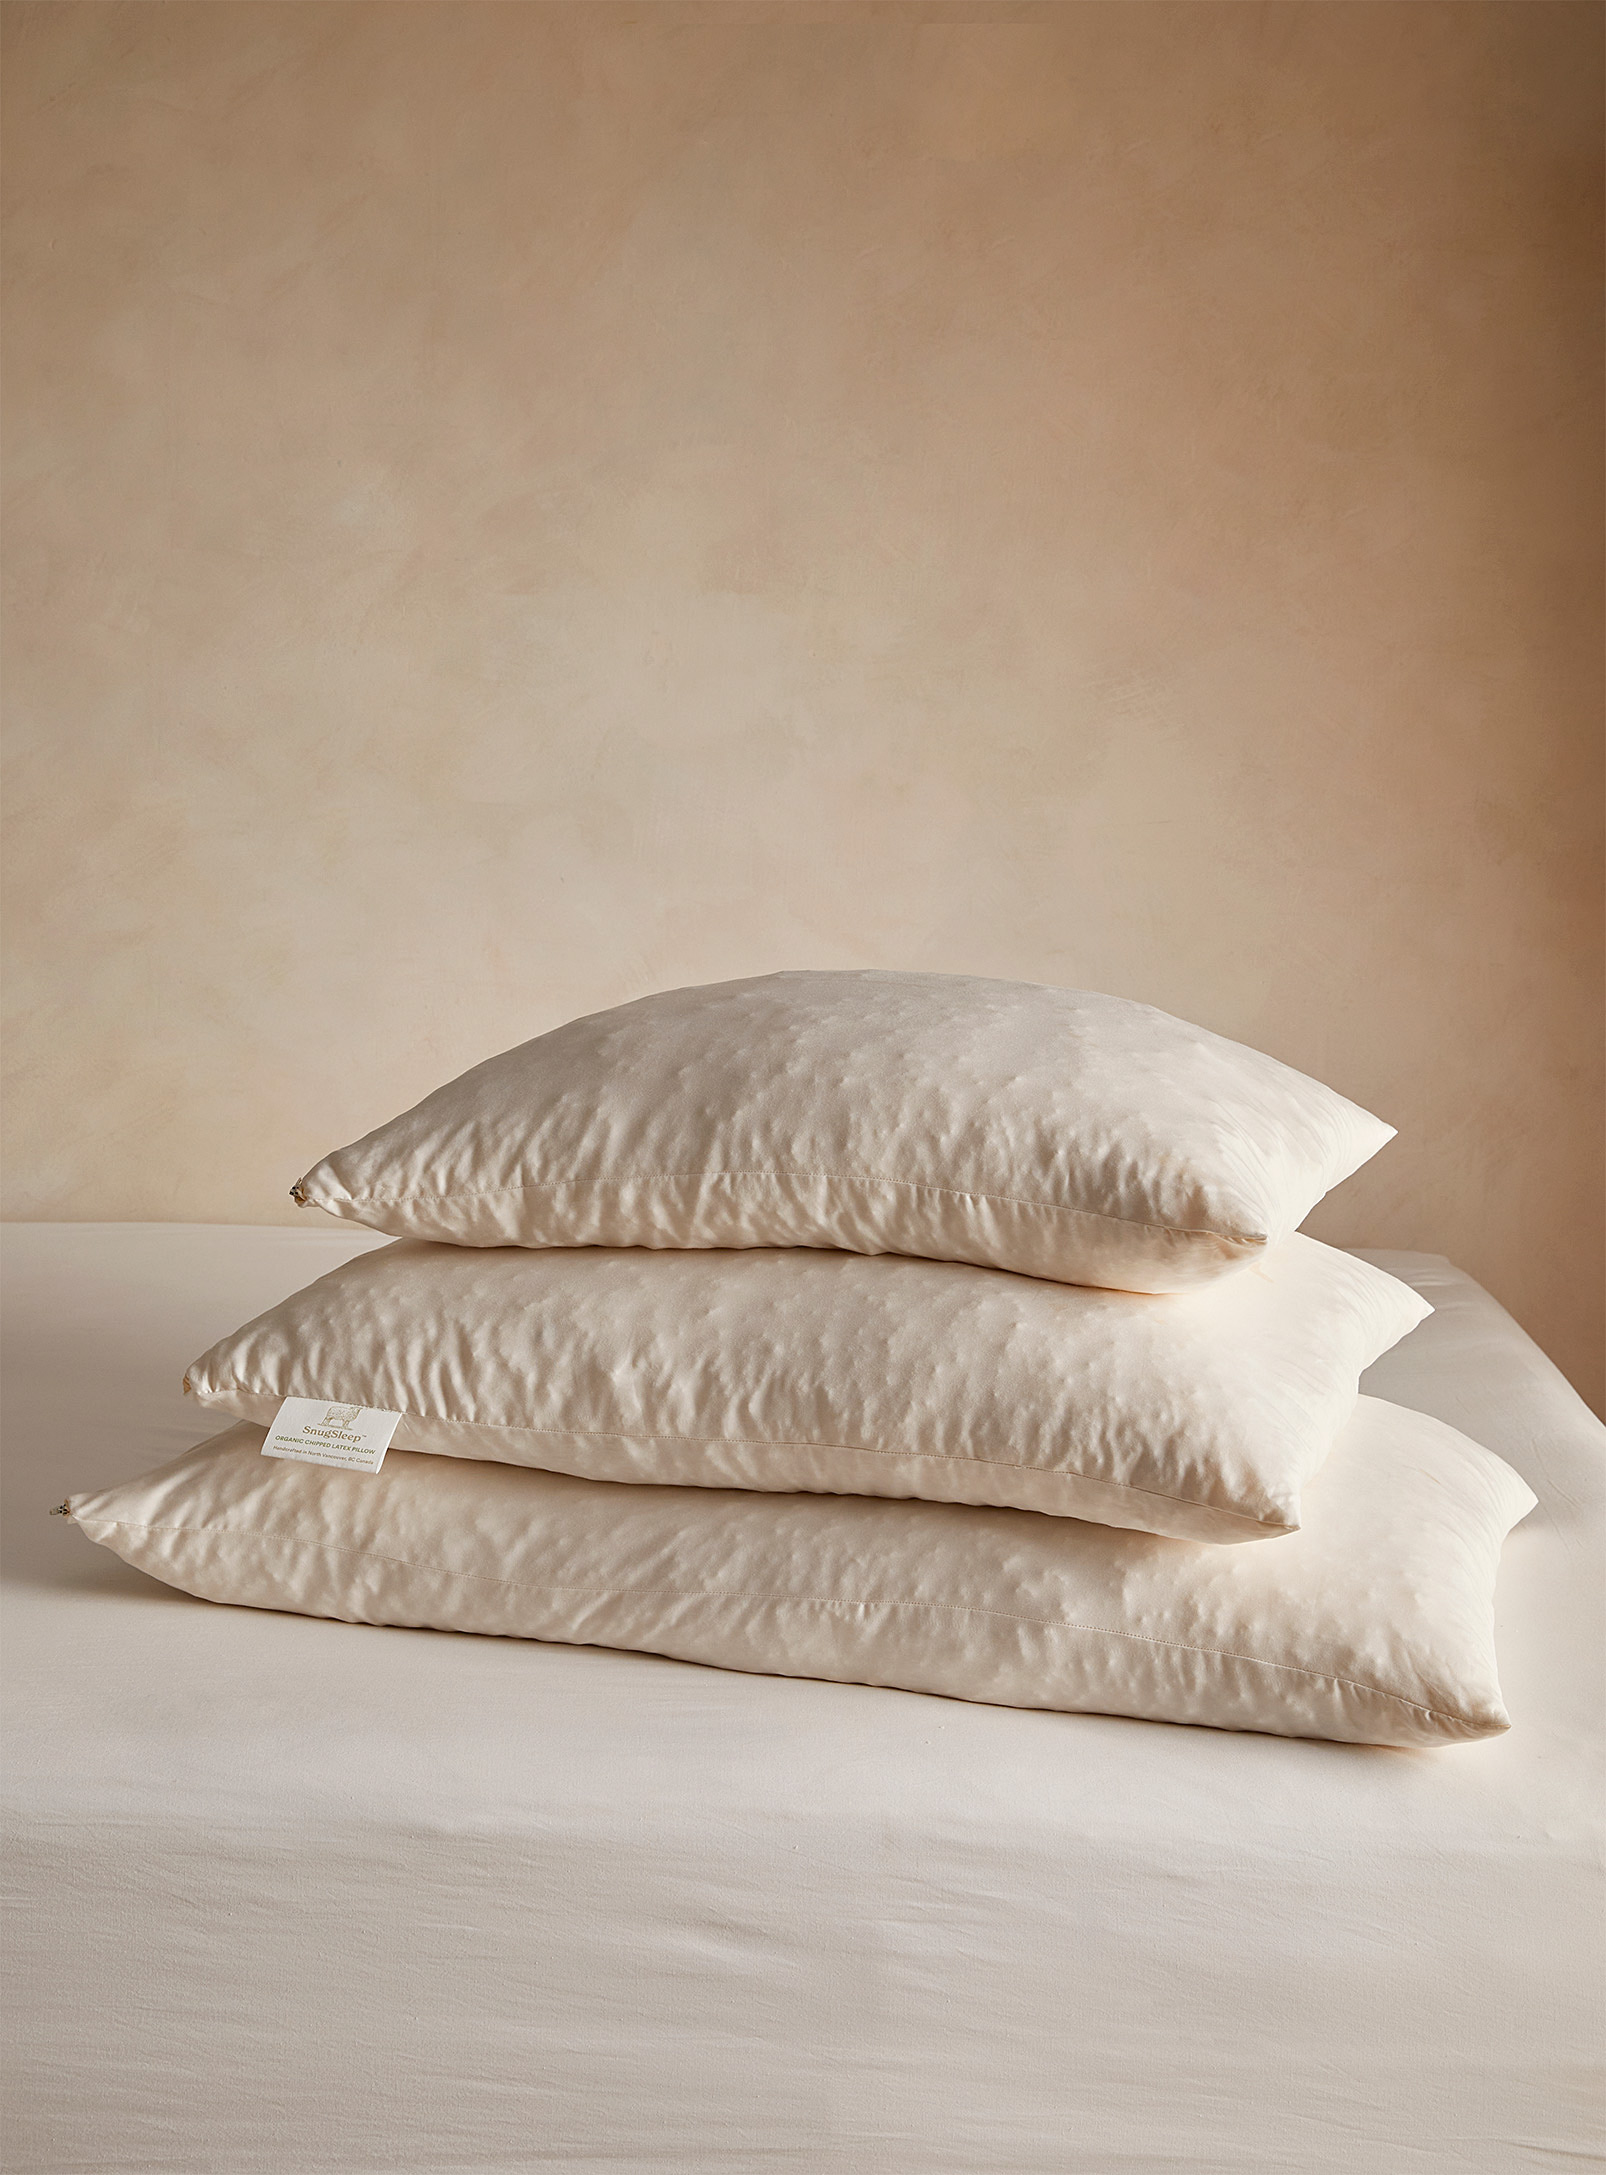 Snugsleep Organic Latex Pillow In White